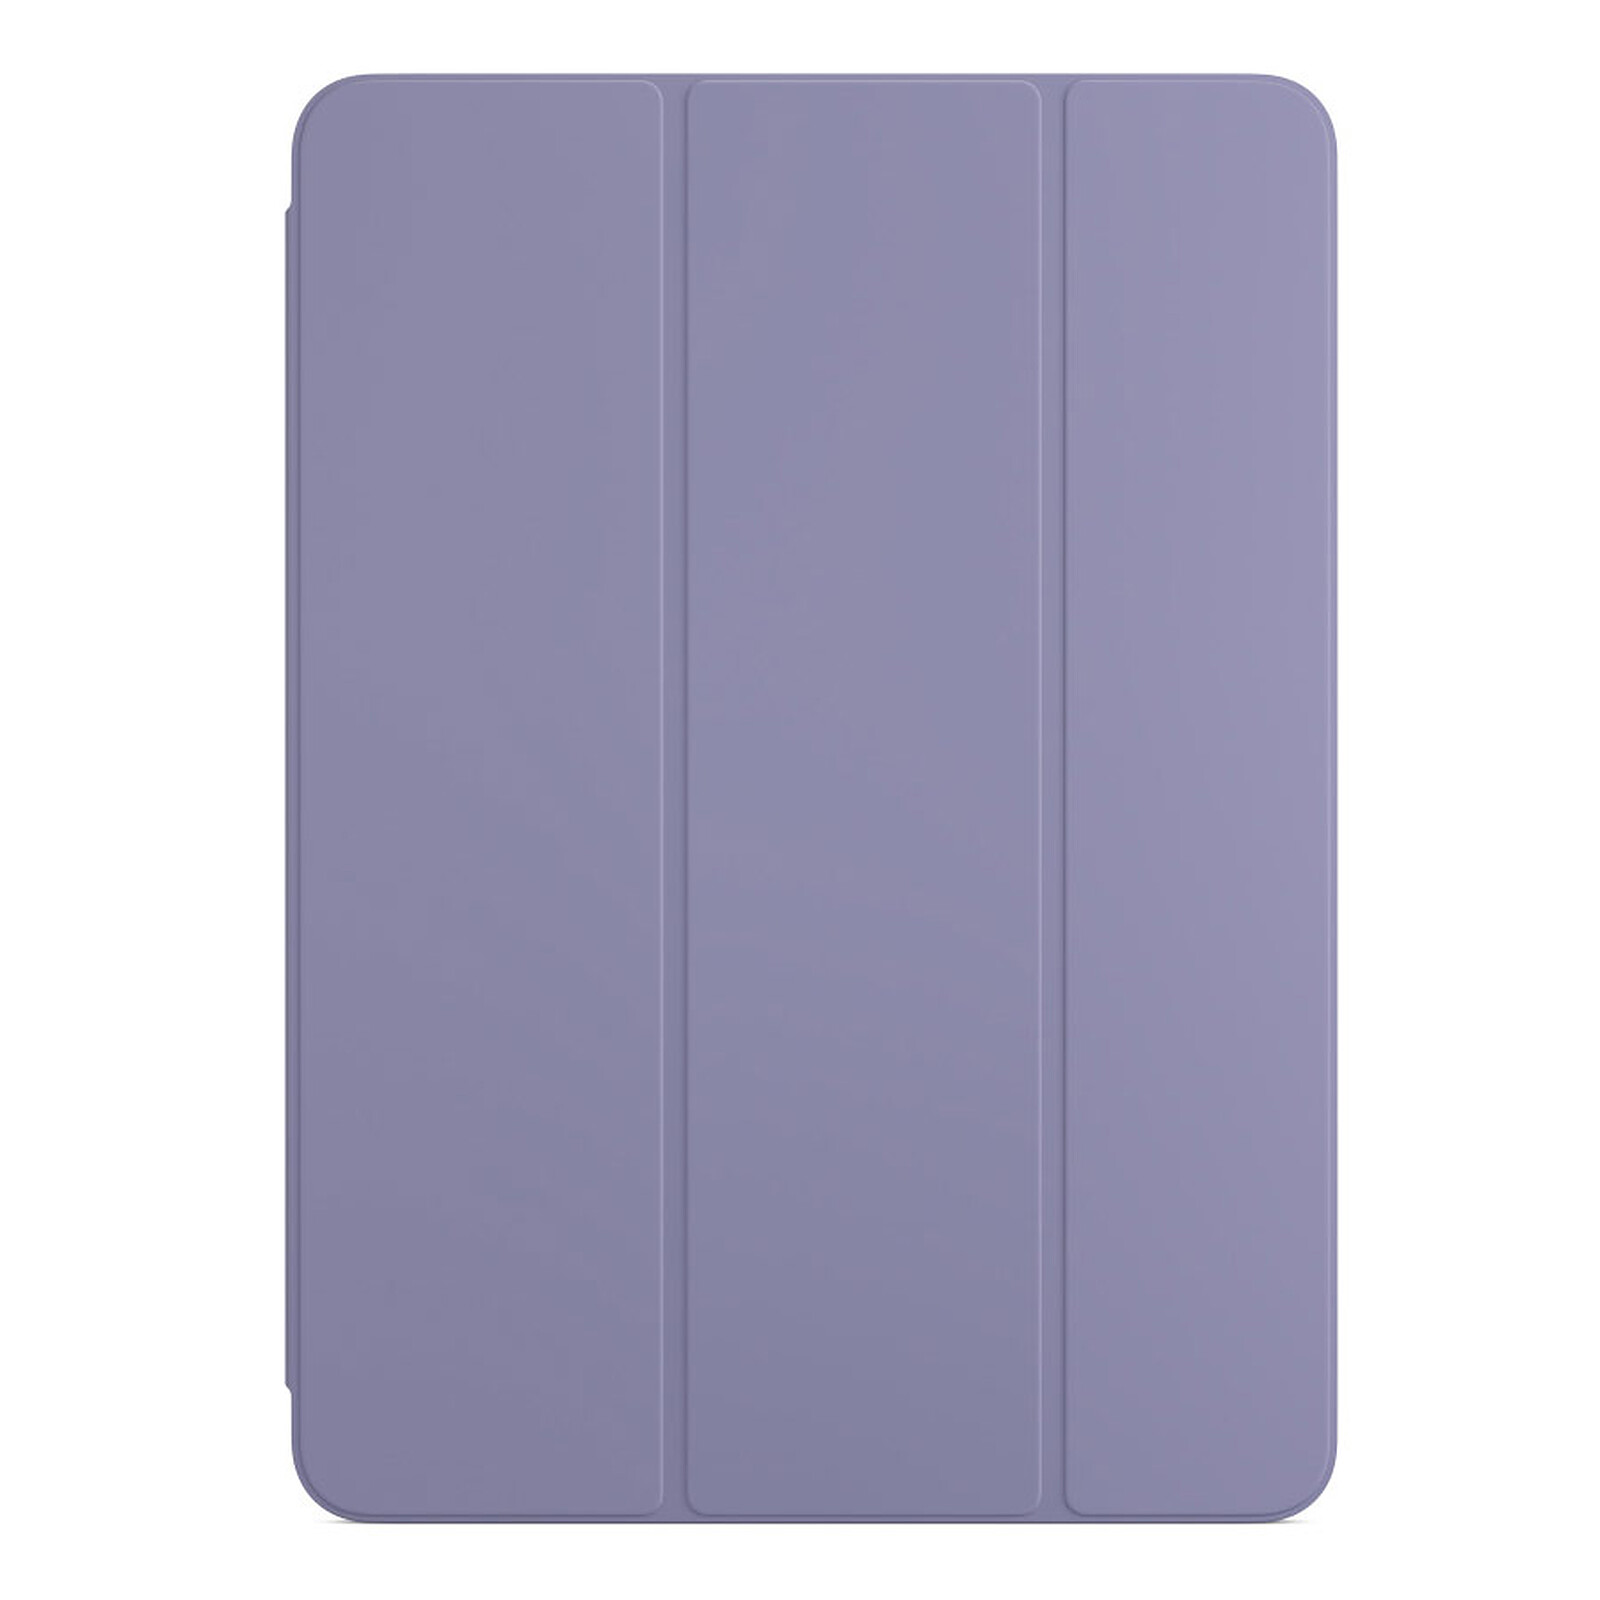 Utiliser le Smart Folio ou la Smart Cover avec votre iPad - Assistance Apple